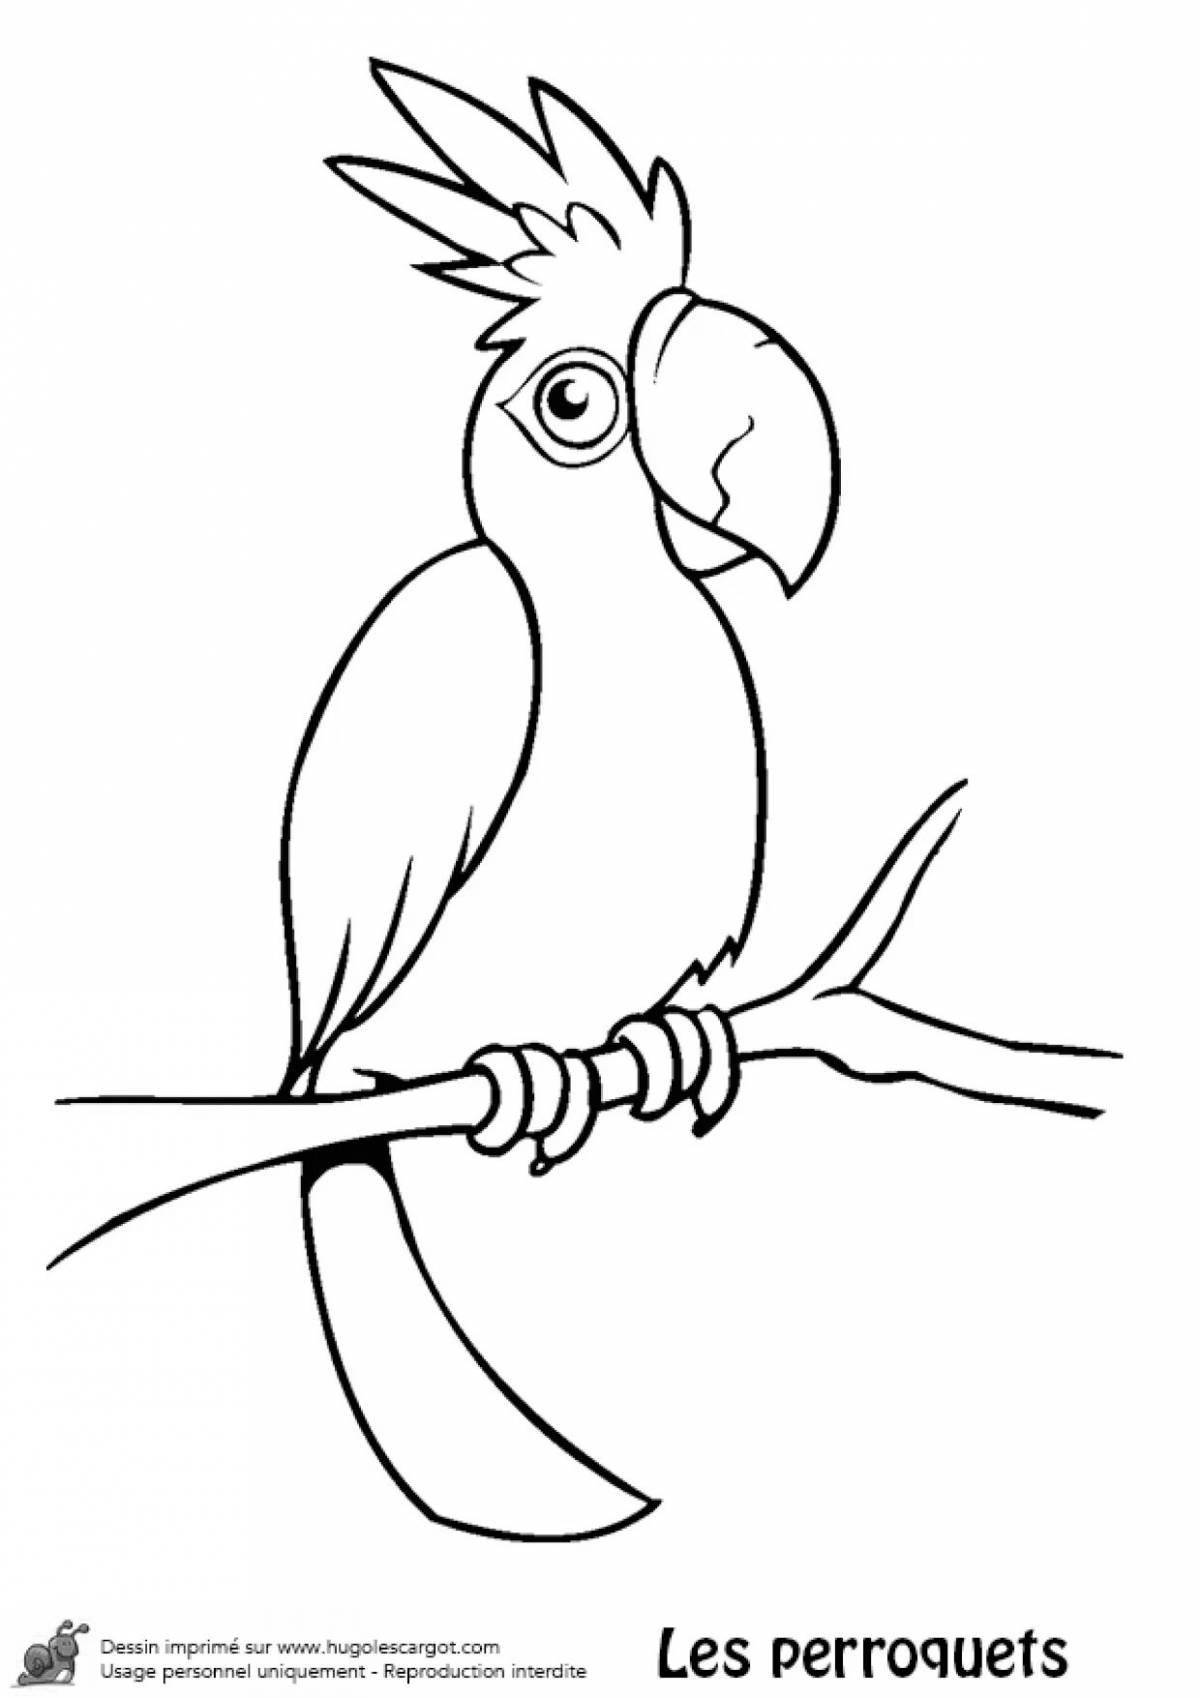 Интригующая раскраска попугай для детей 3-4 лет